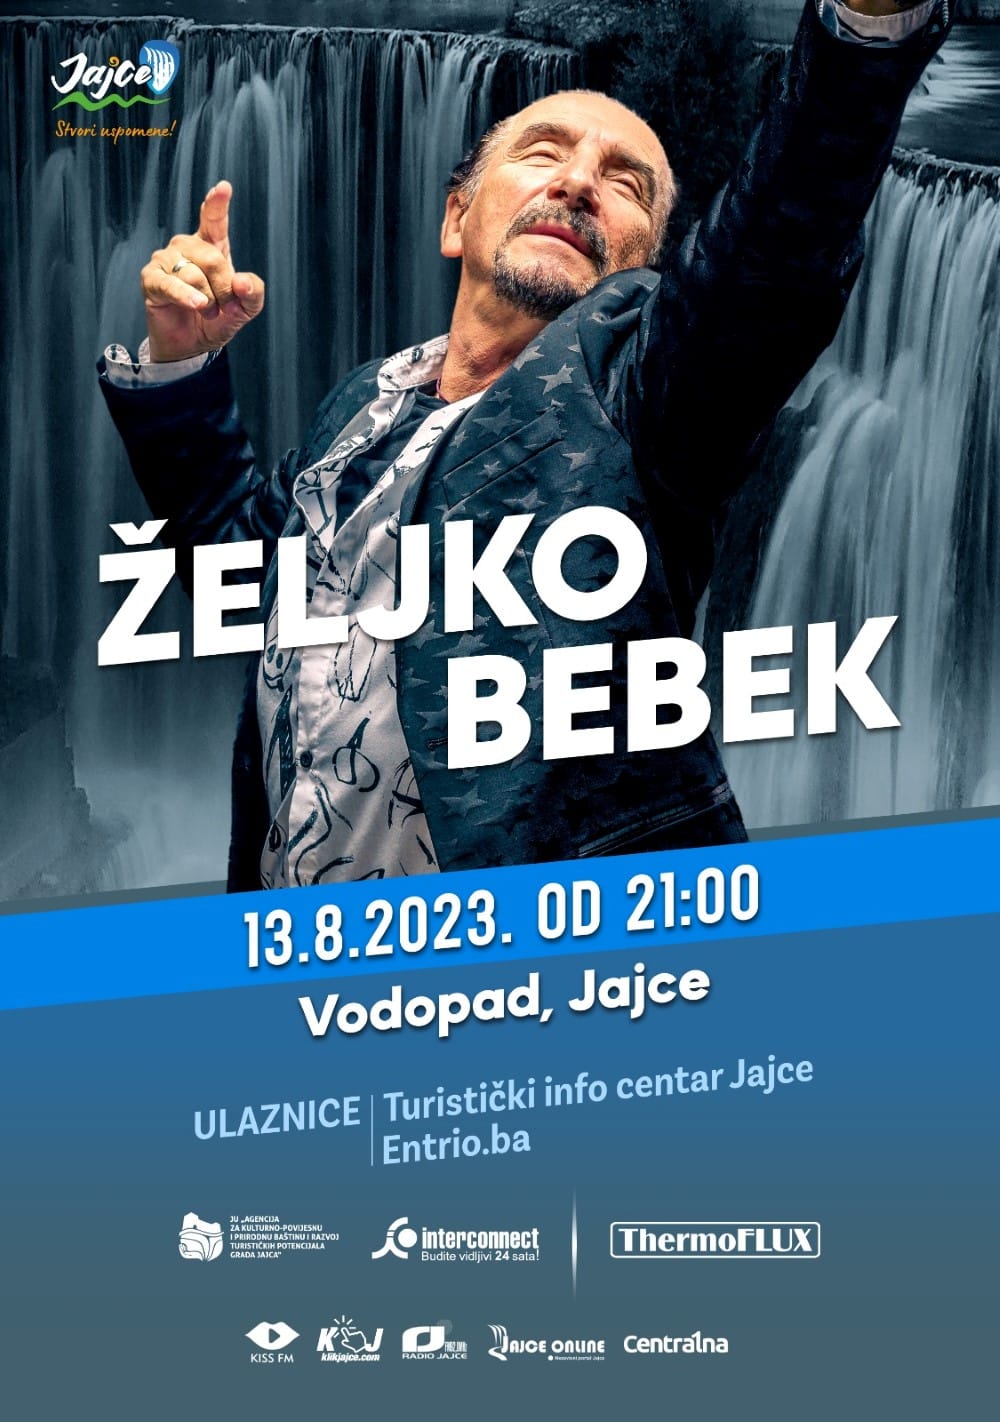 Željko Bebek – Koncert rock legende na 8. skokovima u Jajcu!